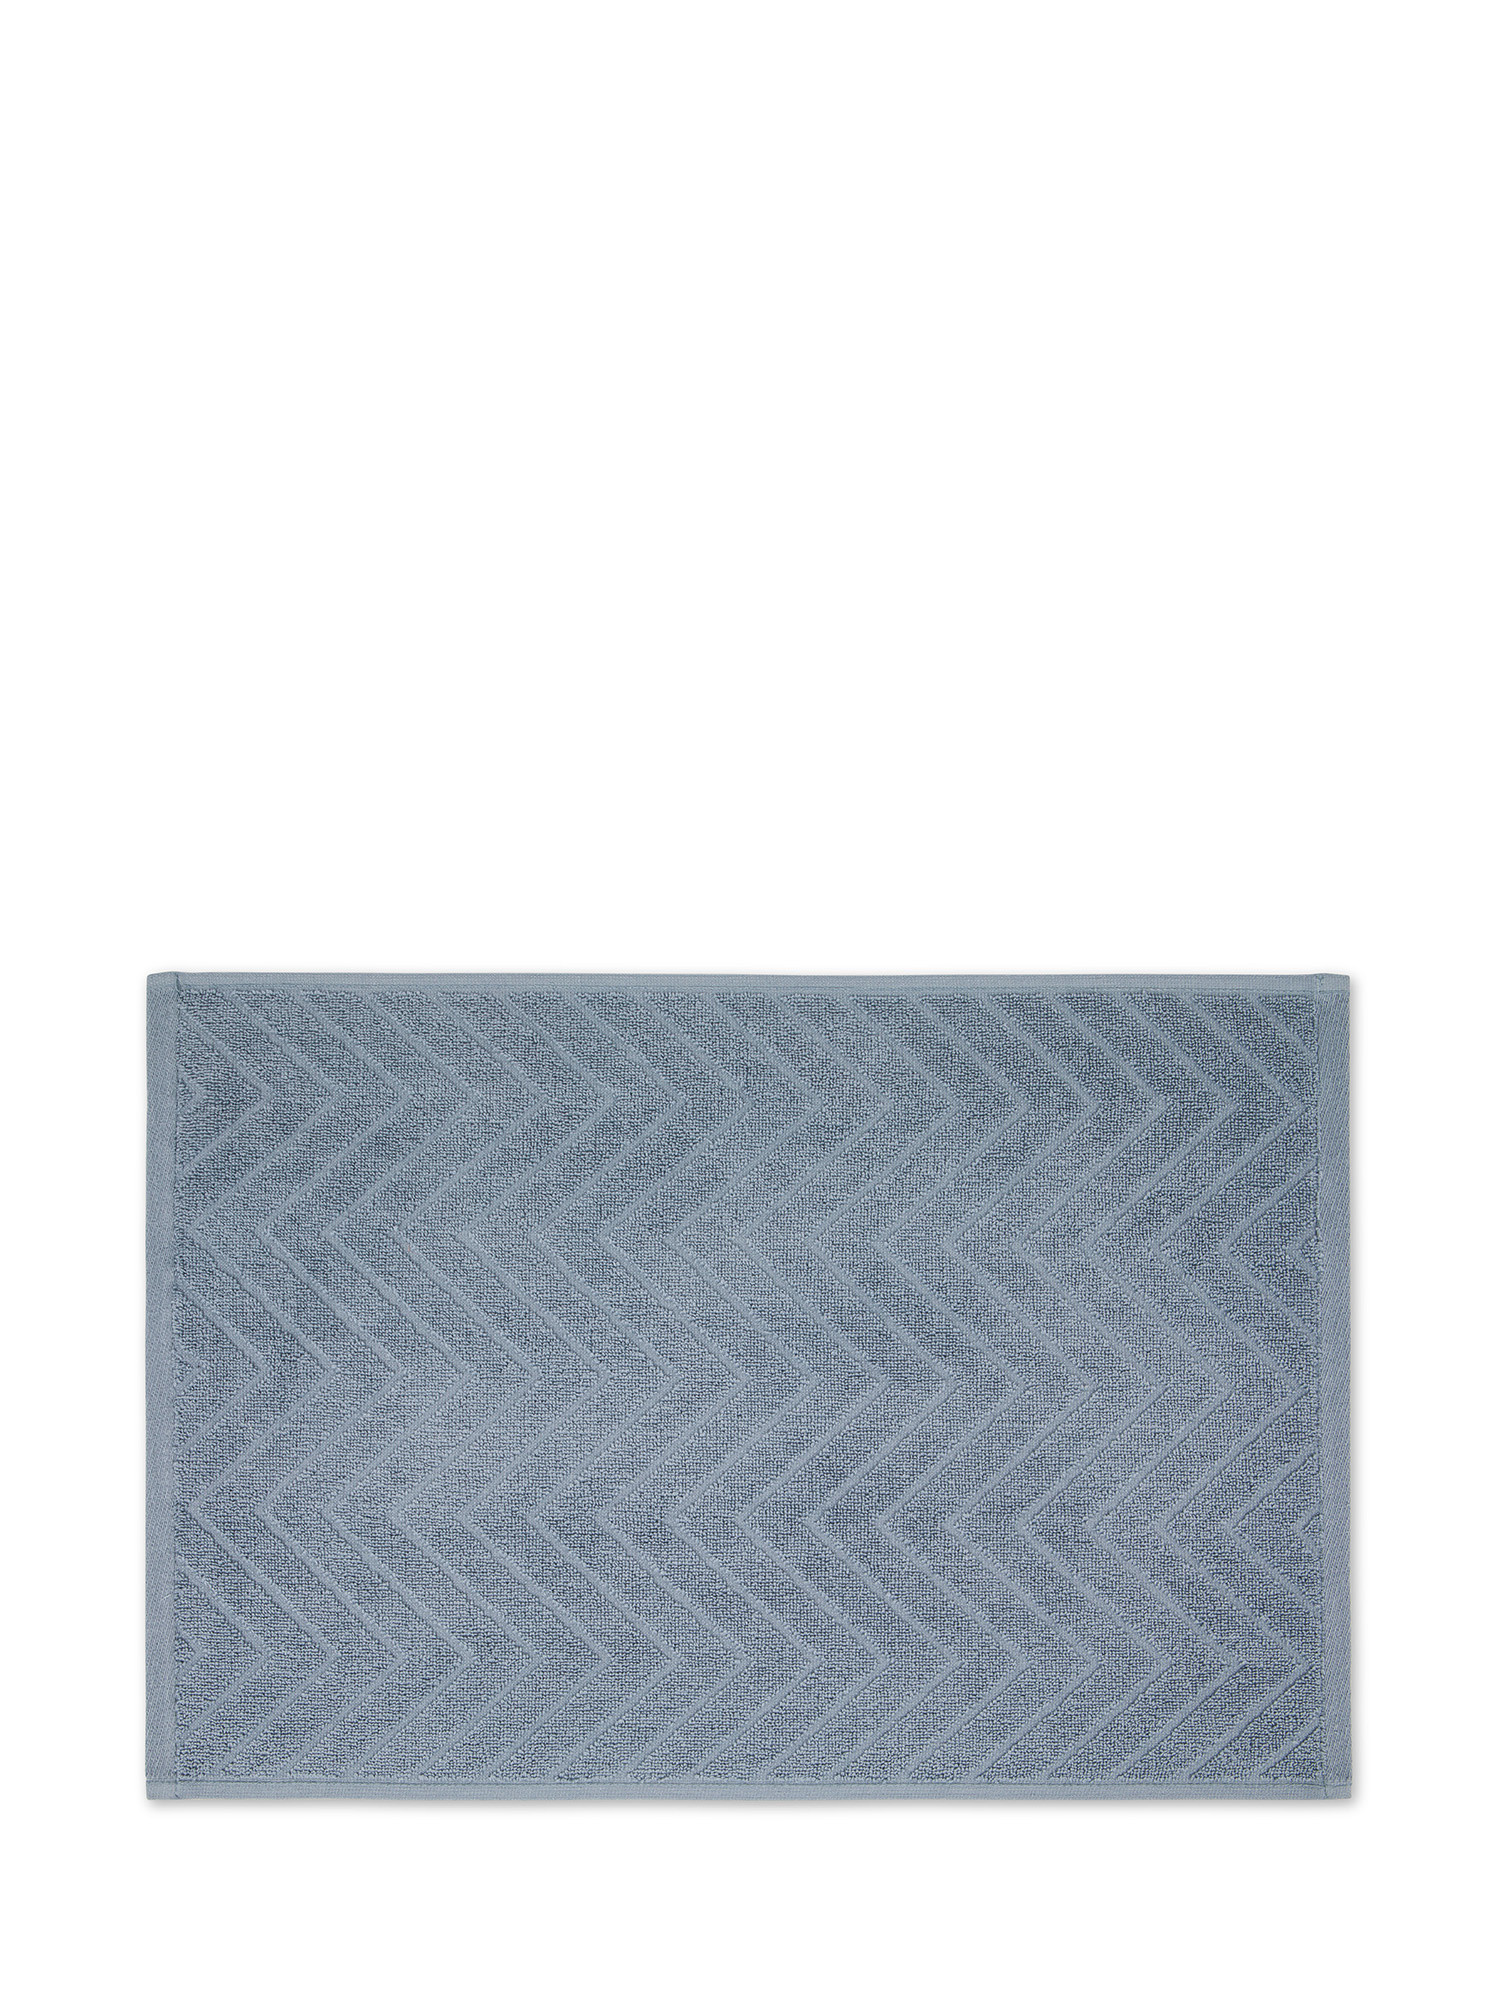 Asciugamano in spugna di cotone con disegno Jacquard, Azzurro, large image number 1